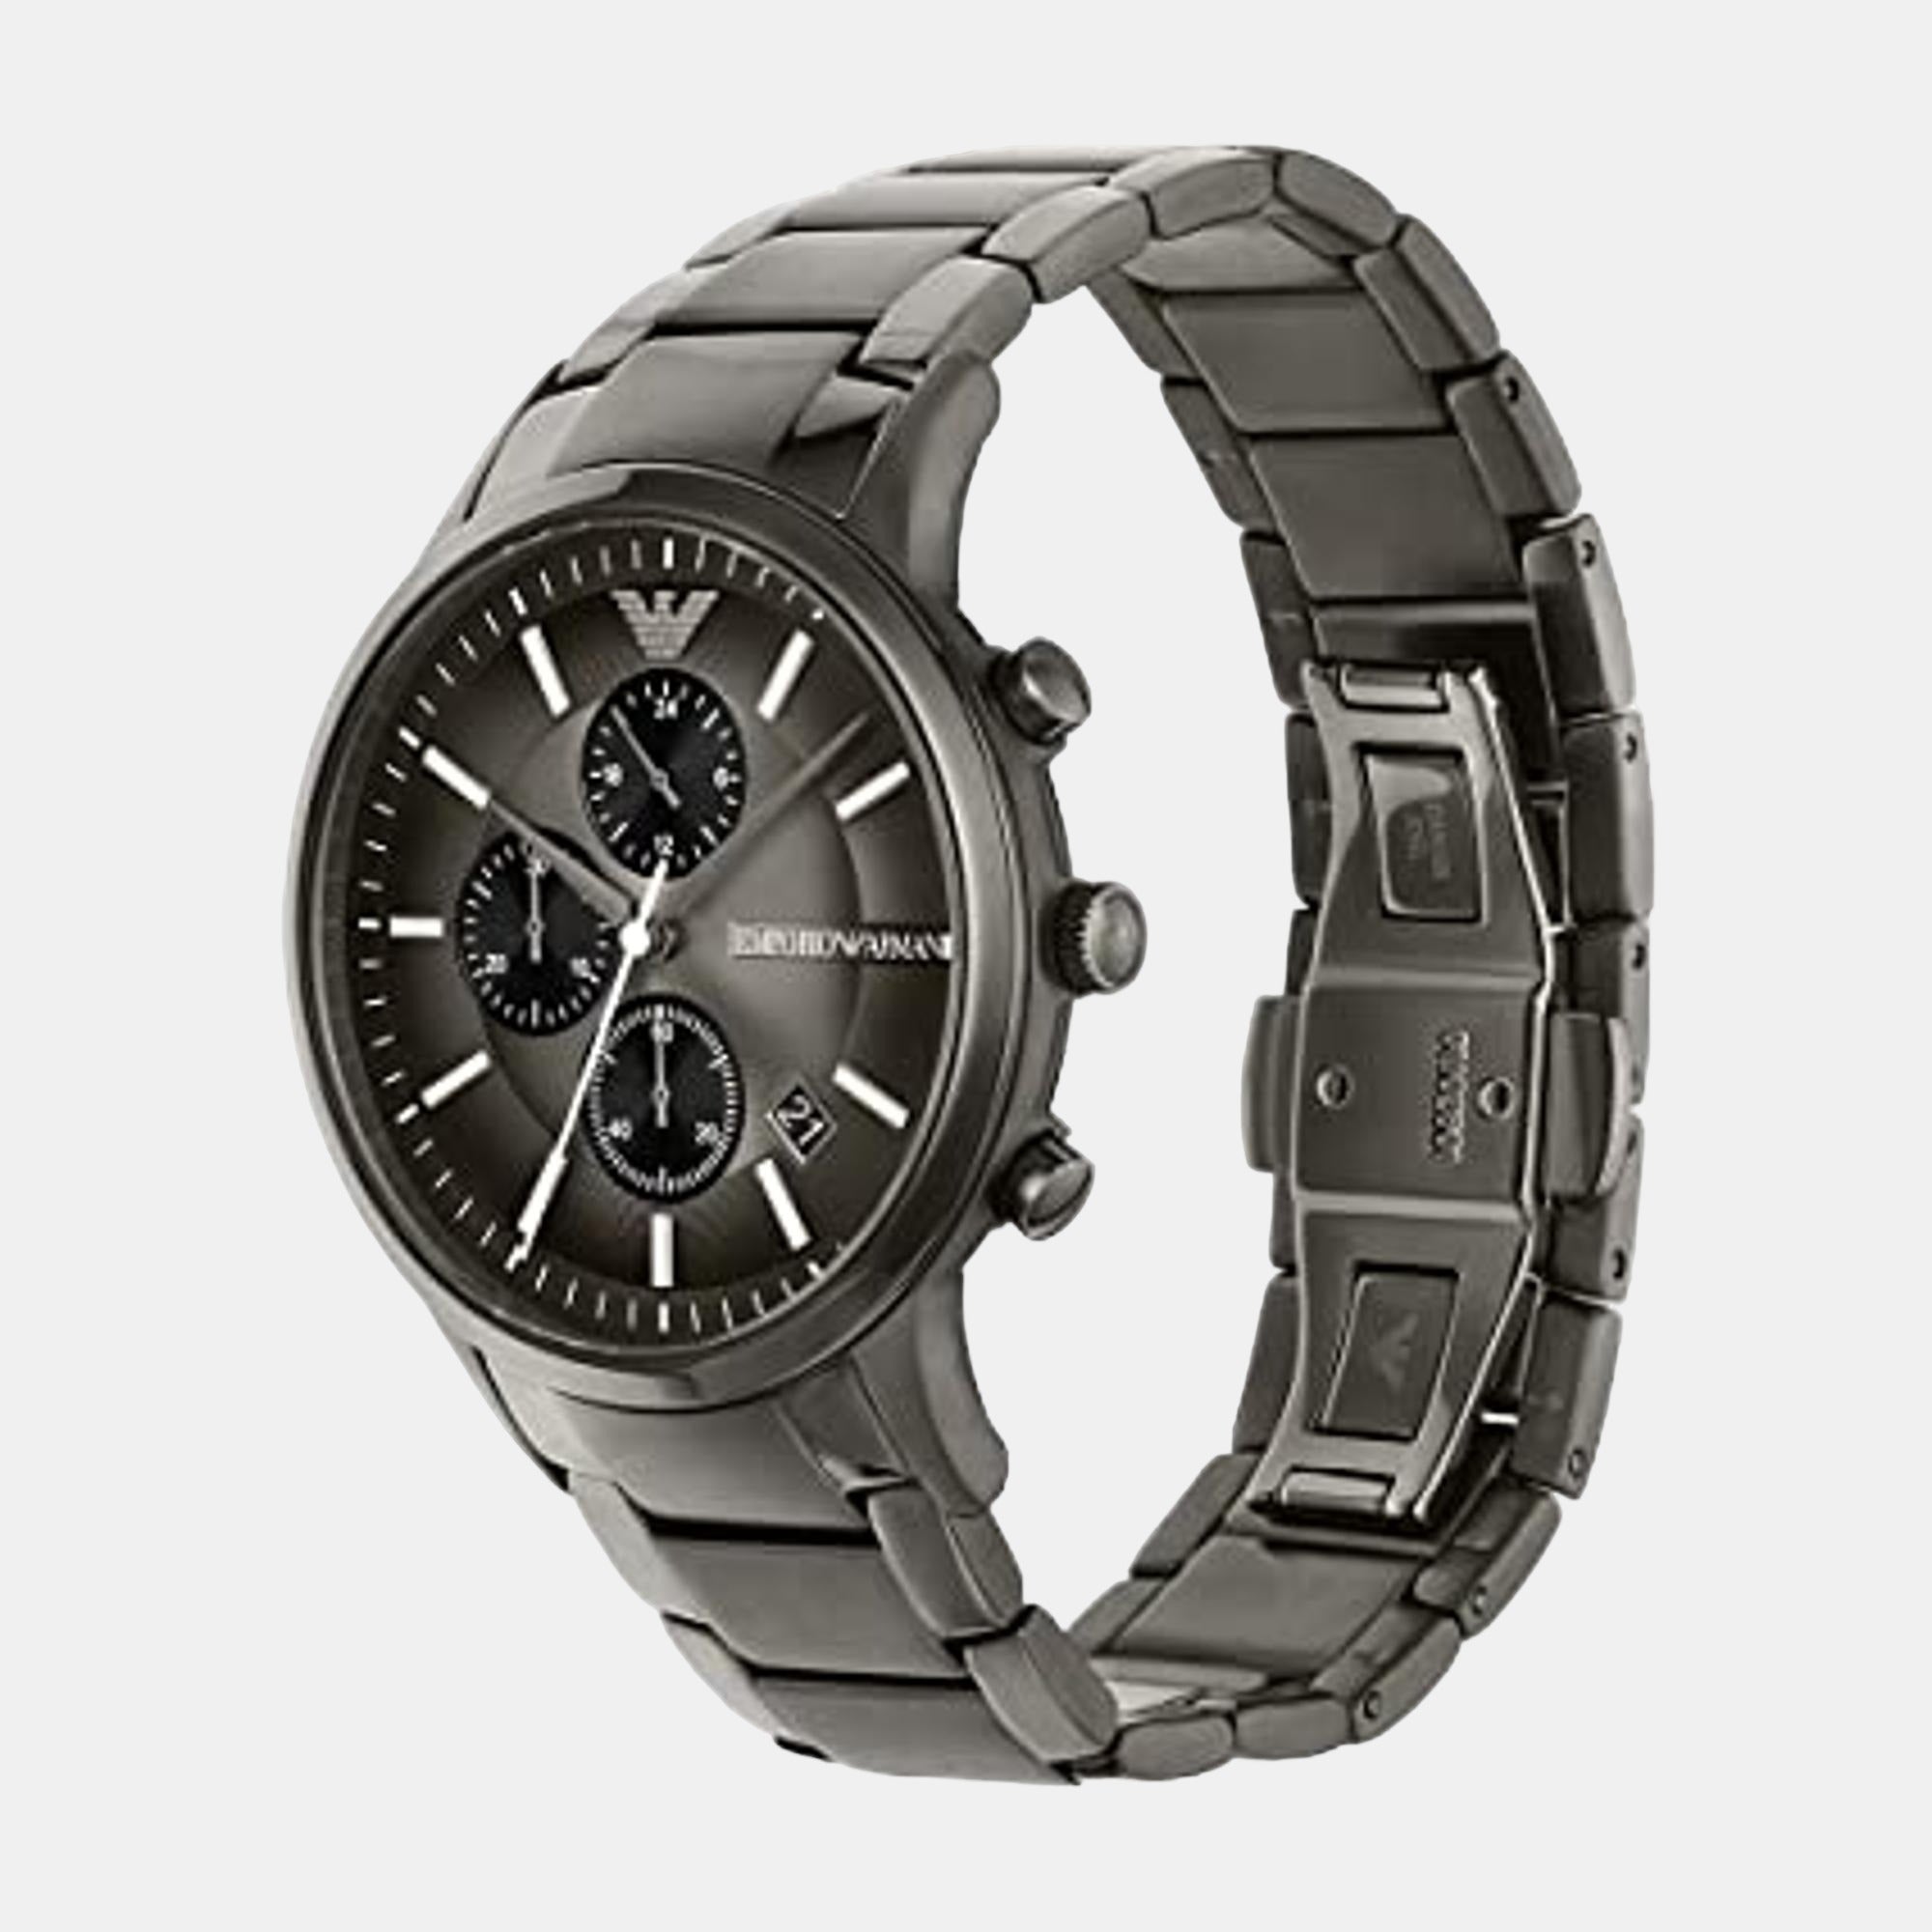 New Mens Emporio Armani AR2454 Gunmetal Grey Watch | 109.99 | Emporio Armani